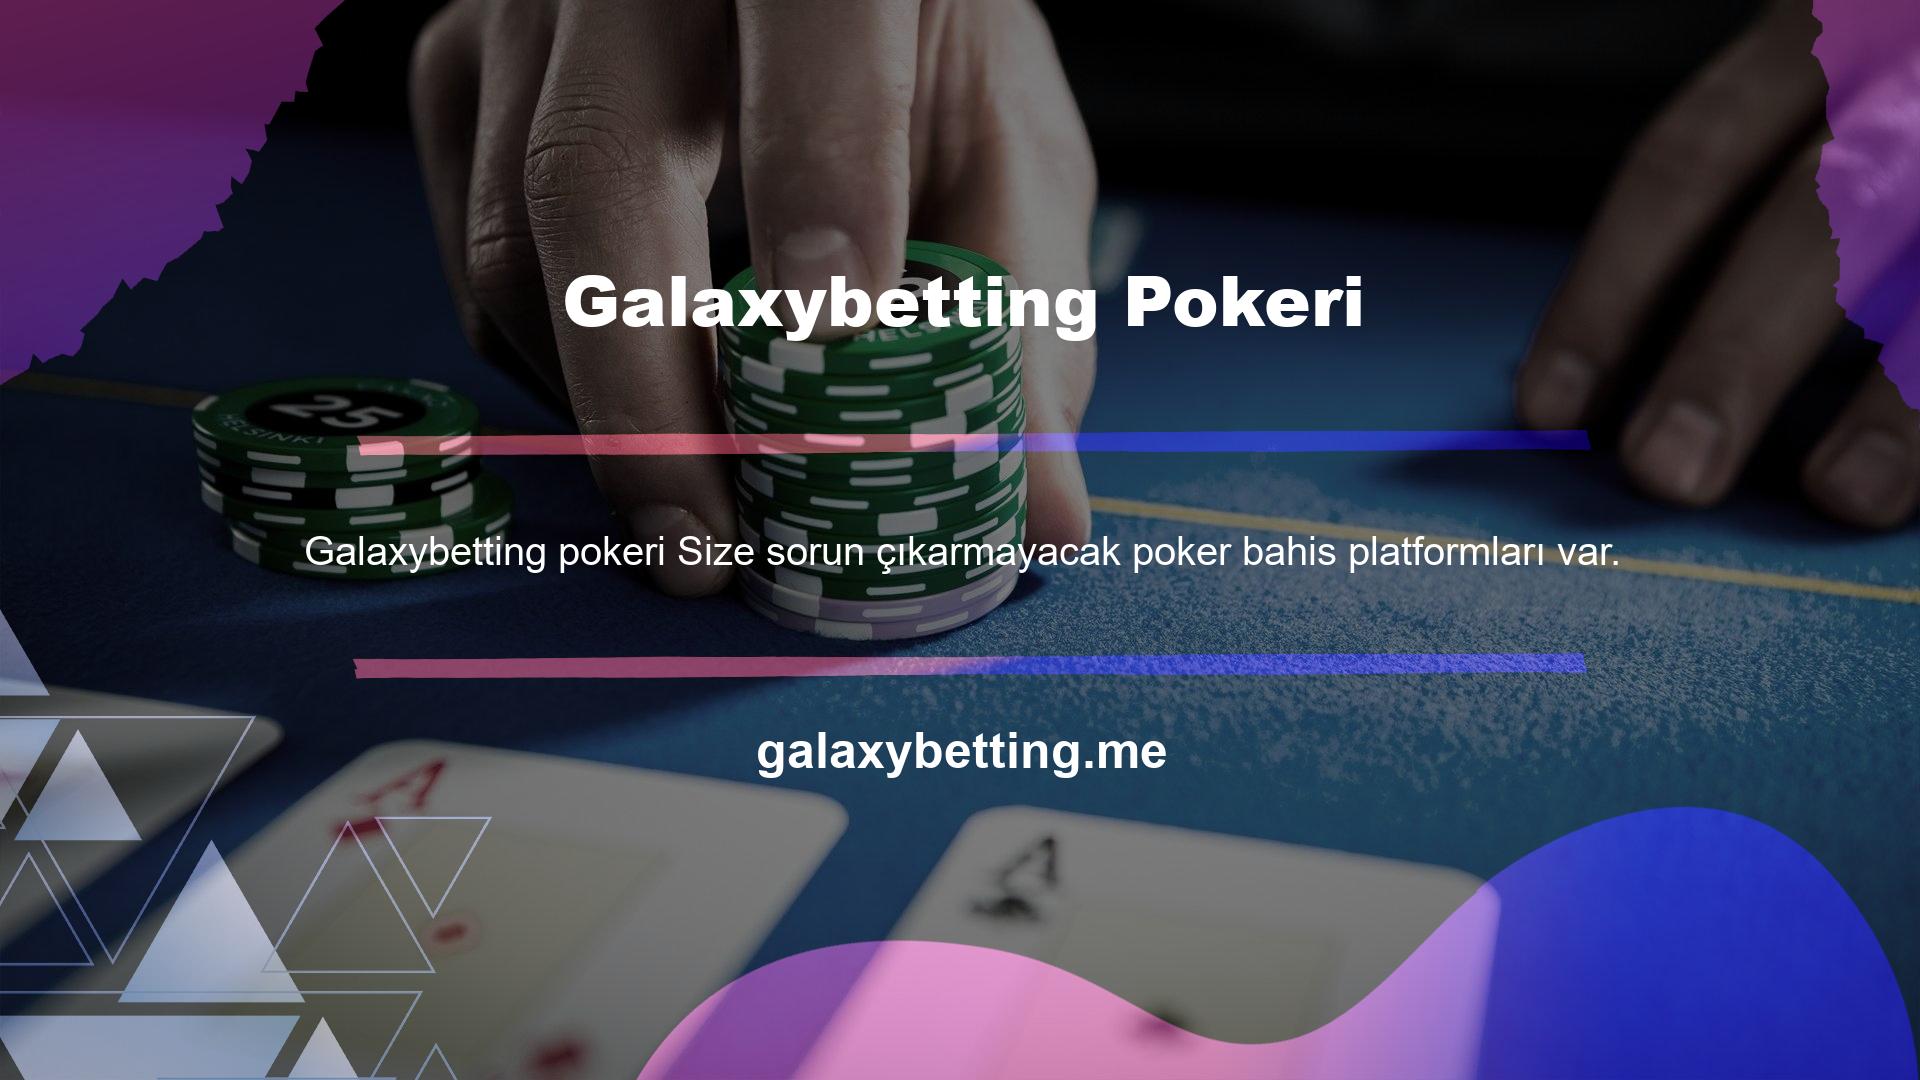 Yüksek kazançlı ve canlı poker oyunlarının ana nedeni haline gelen Galaxybetting yüksek kazançların tadını çıkarabilirsiniz